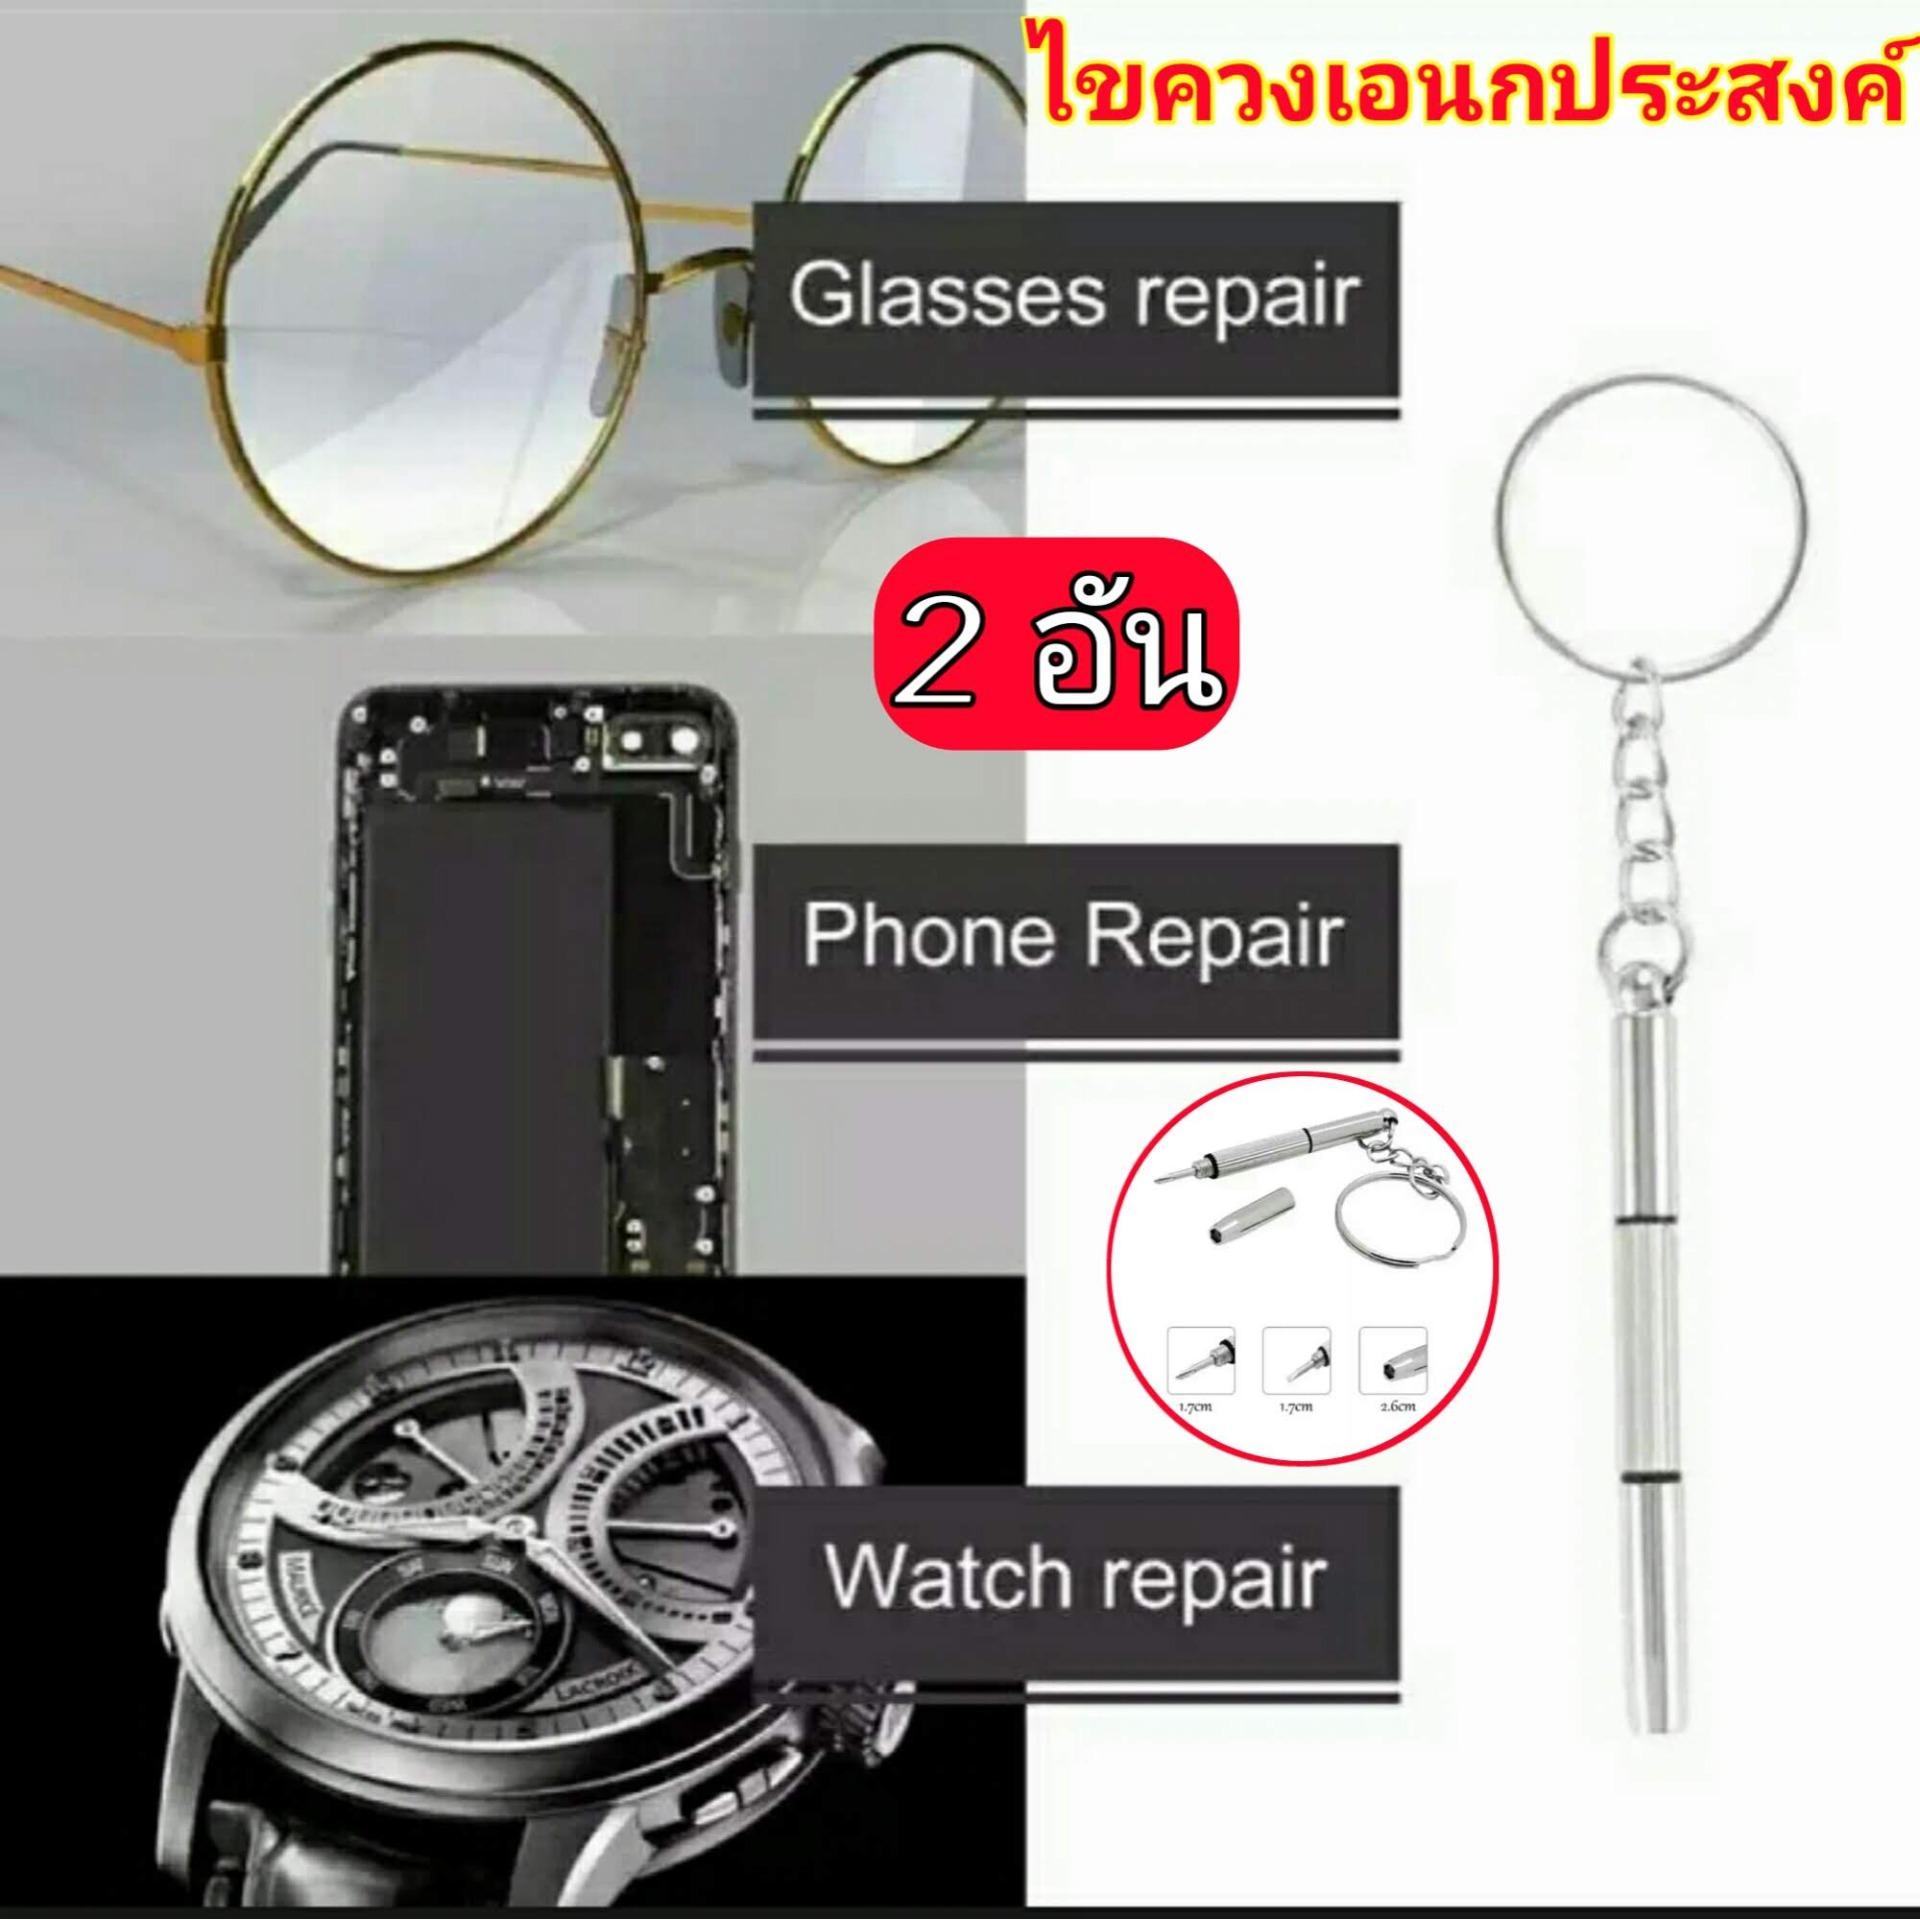 (2 อัน) พวงกุญแจไขควง 3 หัว สำหรับซ่อมแว่นตา นาฬิกา โทรศัพท์ พวงกุญแจไขควง ไขควงอเนกประสงค์